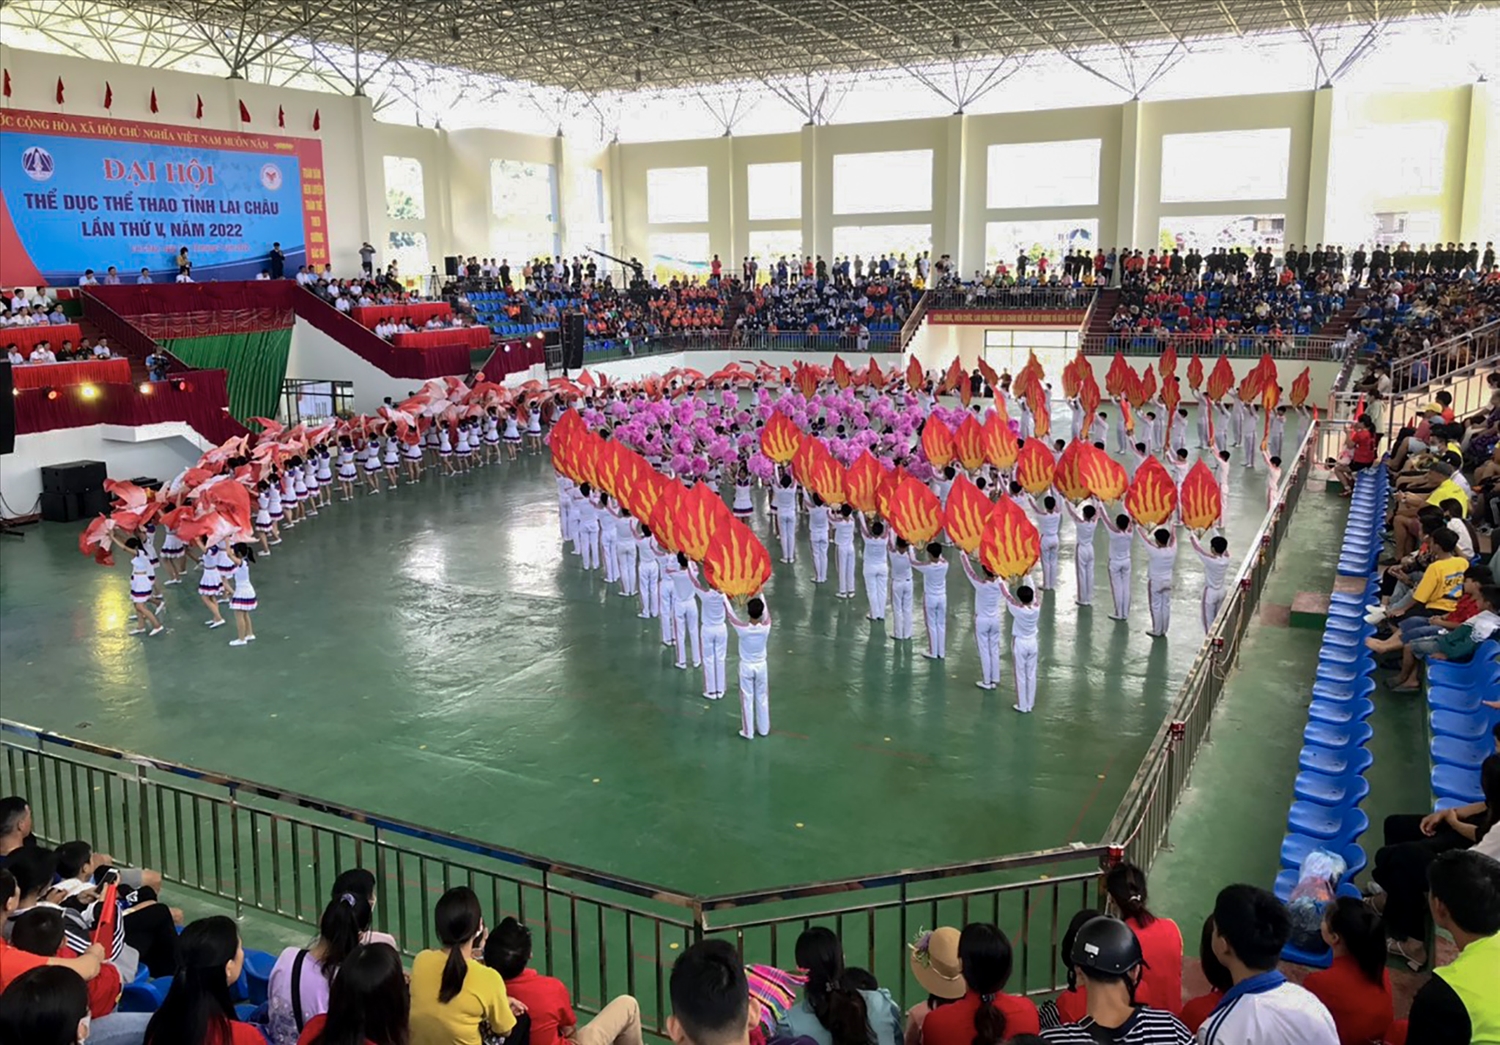 Chương trình đồng diễn thể dục nghệ thuật với chủ đề "Thể dục thể thao Lai Châu vươn lên tầm cao mới" tại Đại hội